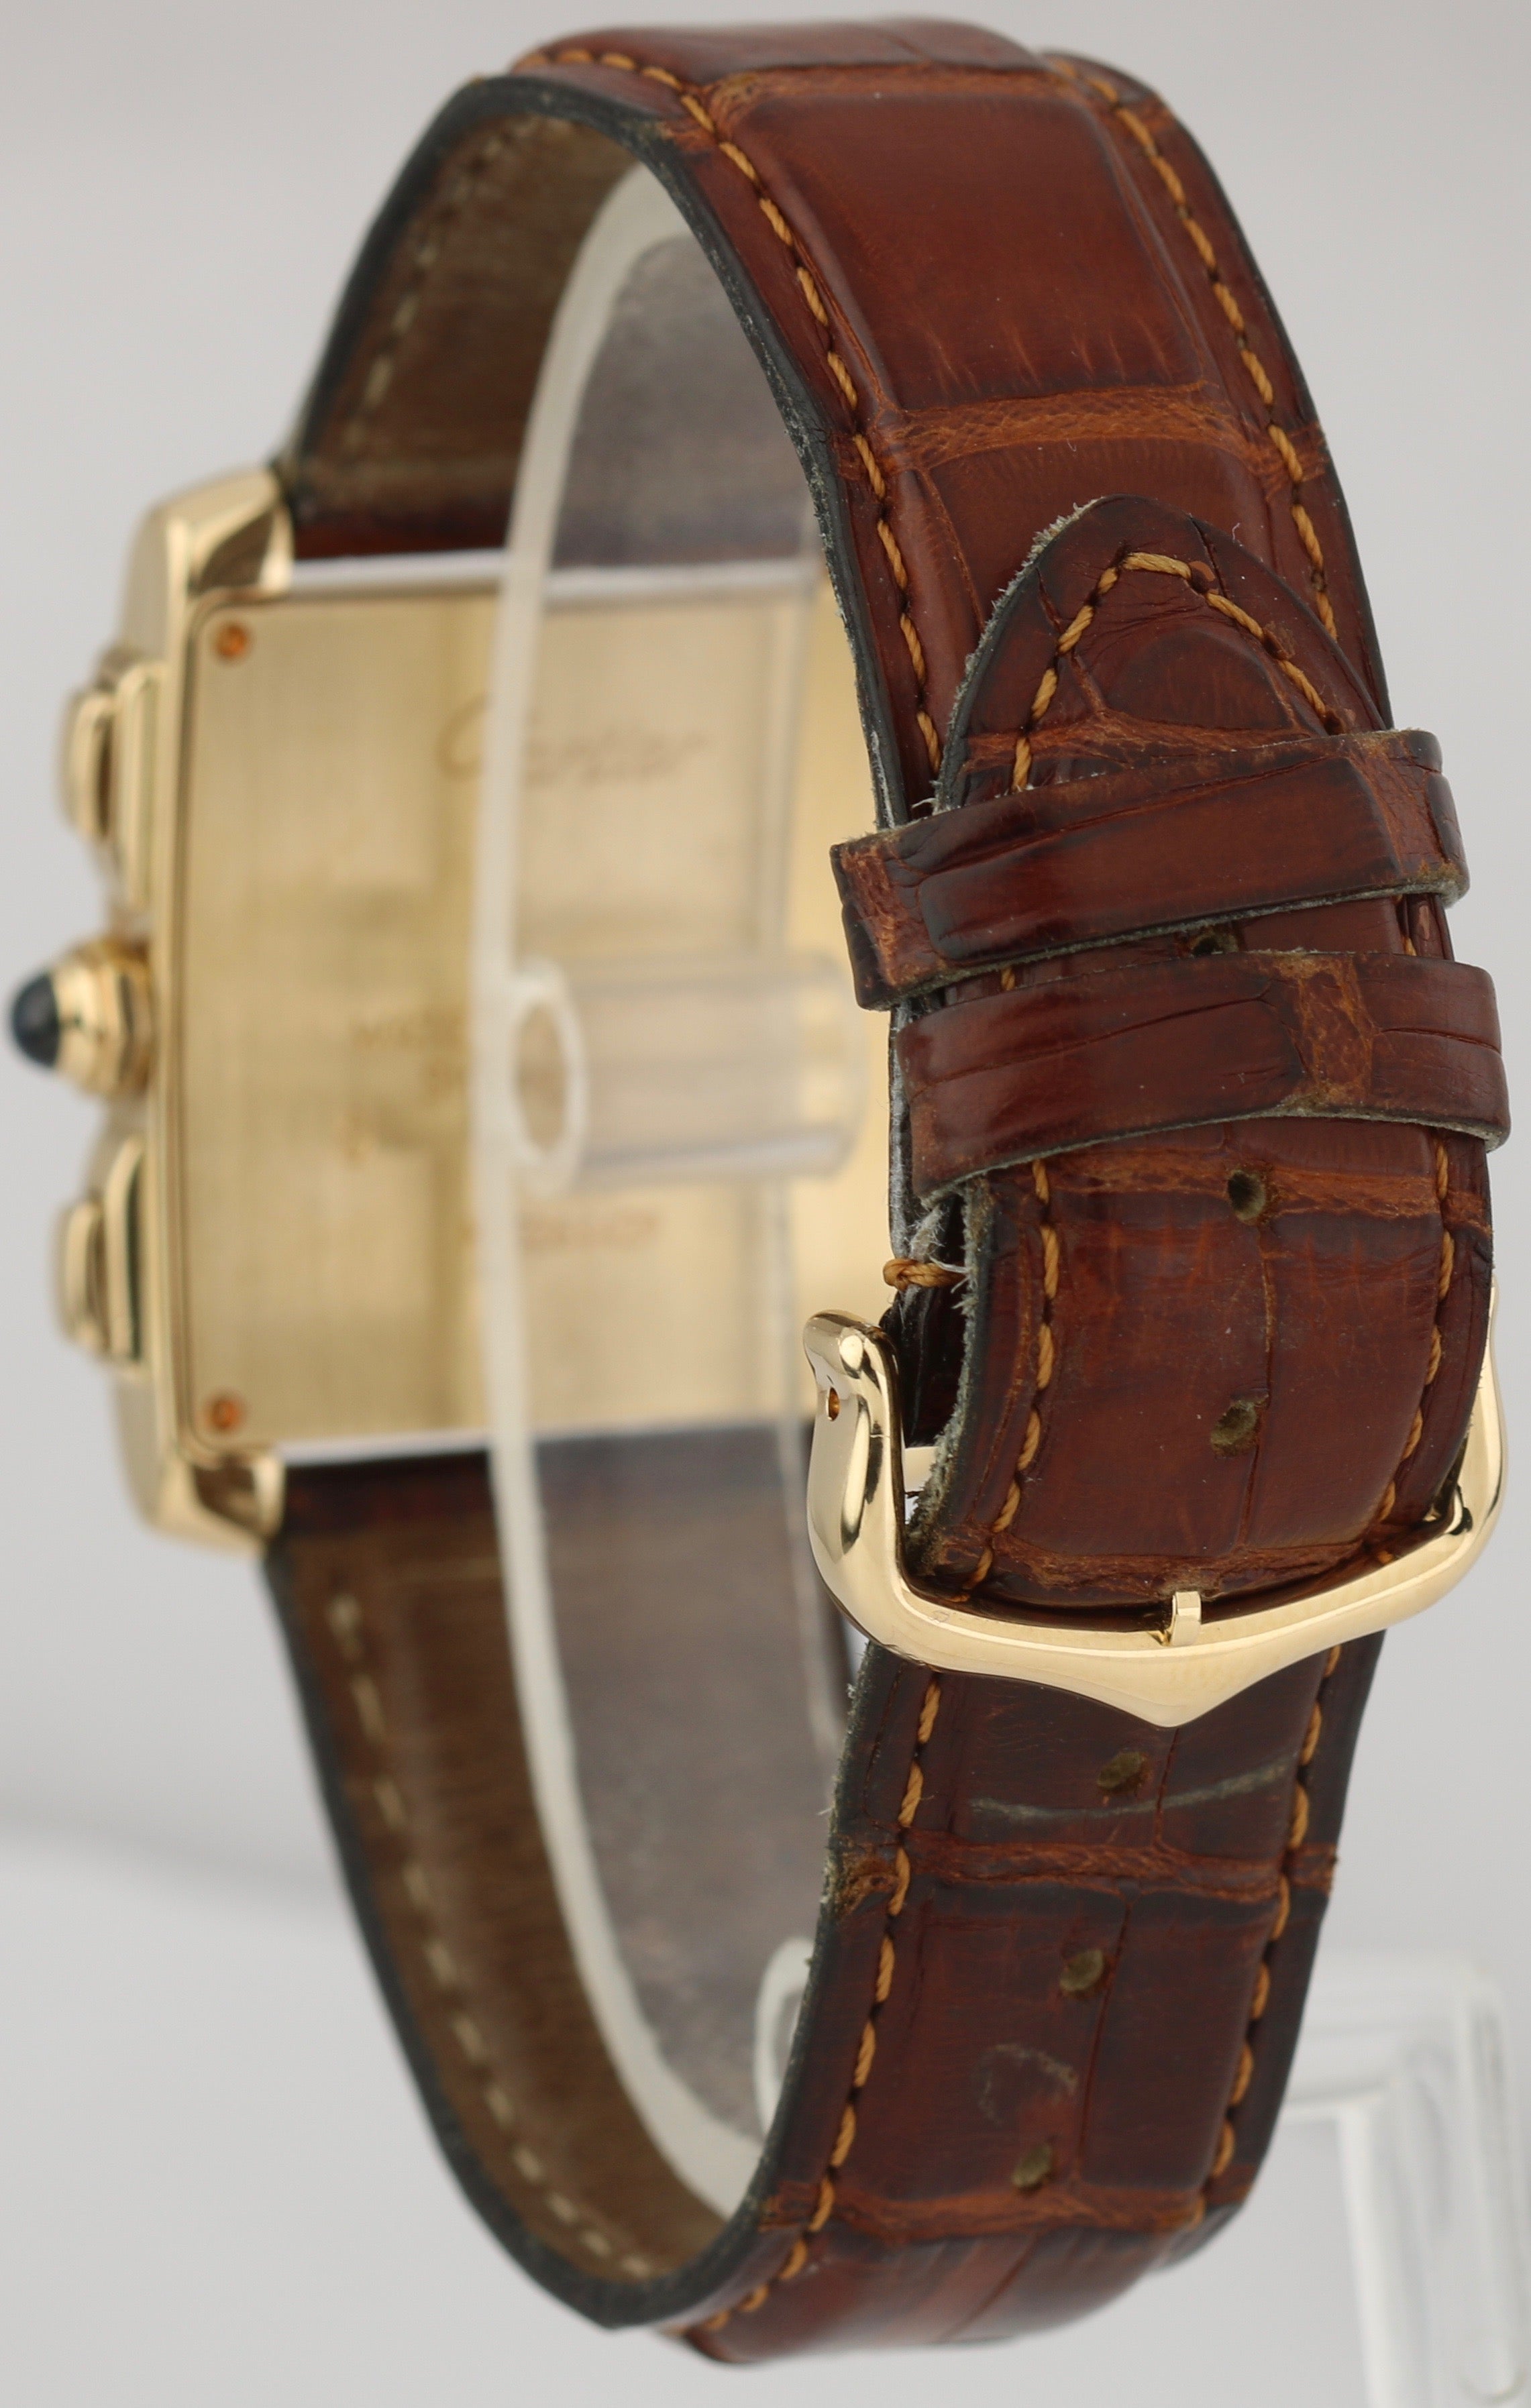 MINT Cartier Tank Francaise Chronoflex Chronograph 18K Gold Quartz Watch 1830